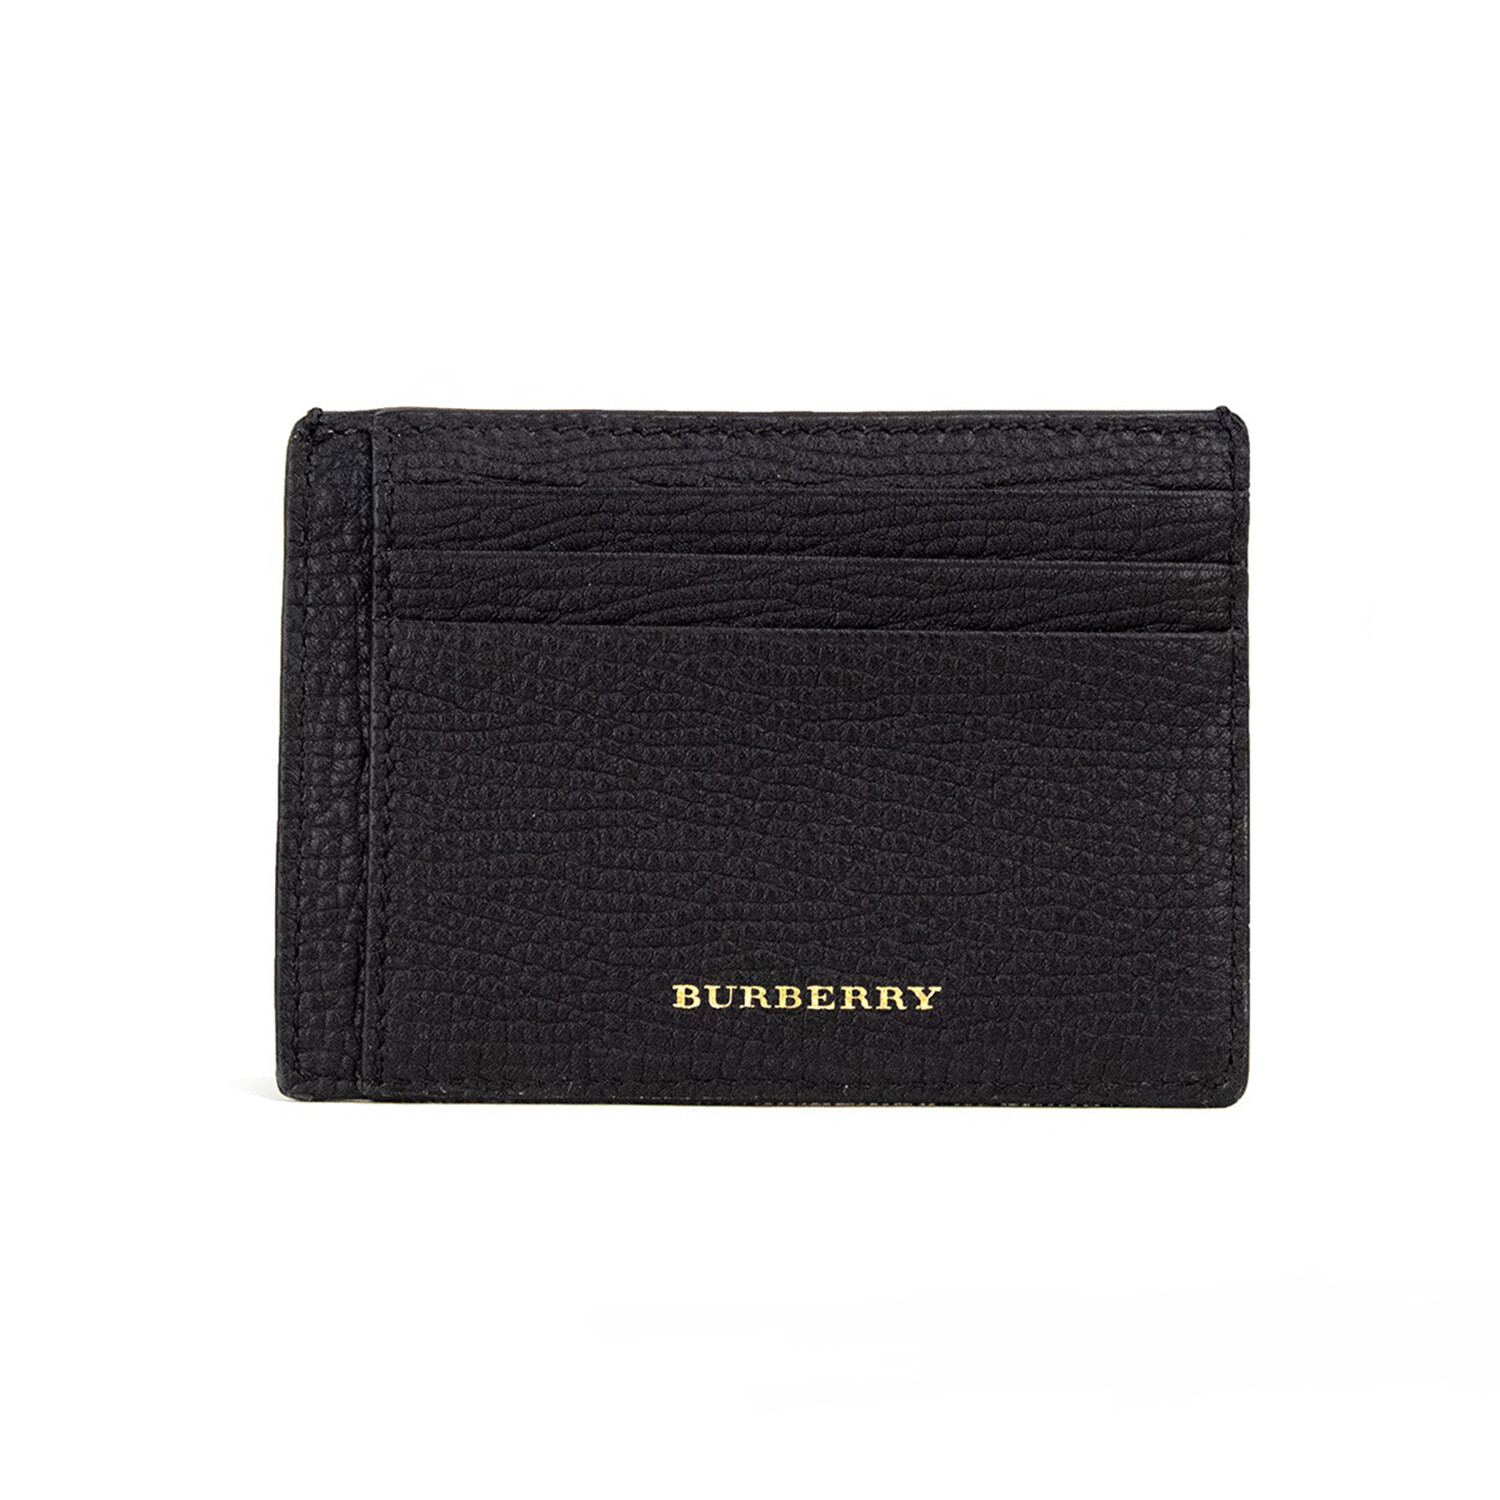 Burberry Check Money Clip Card Case